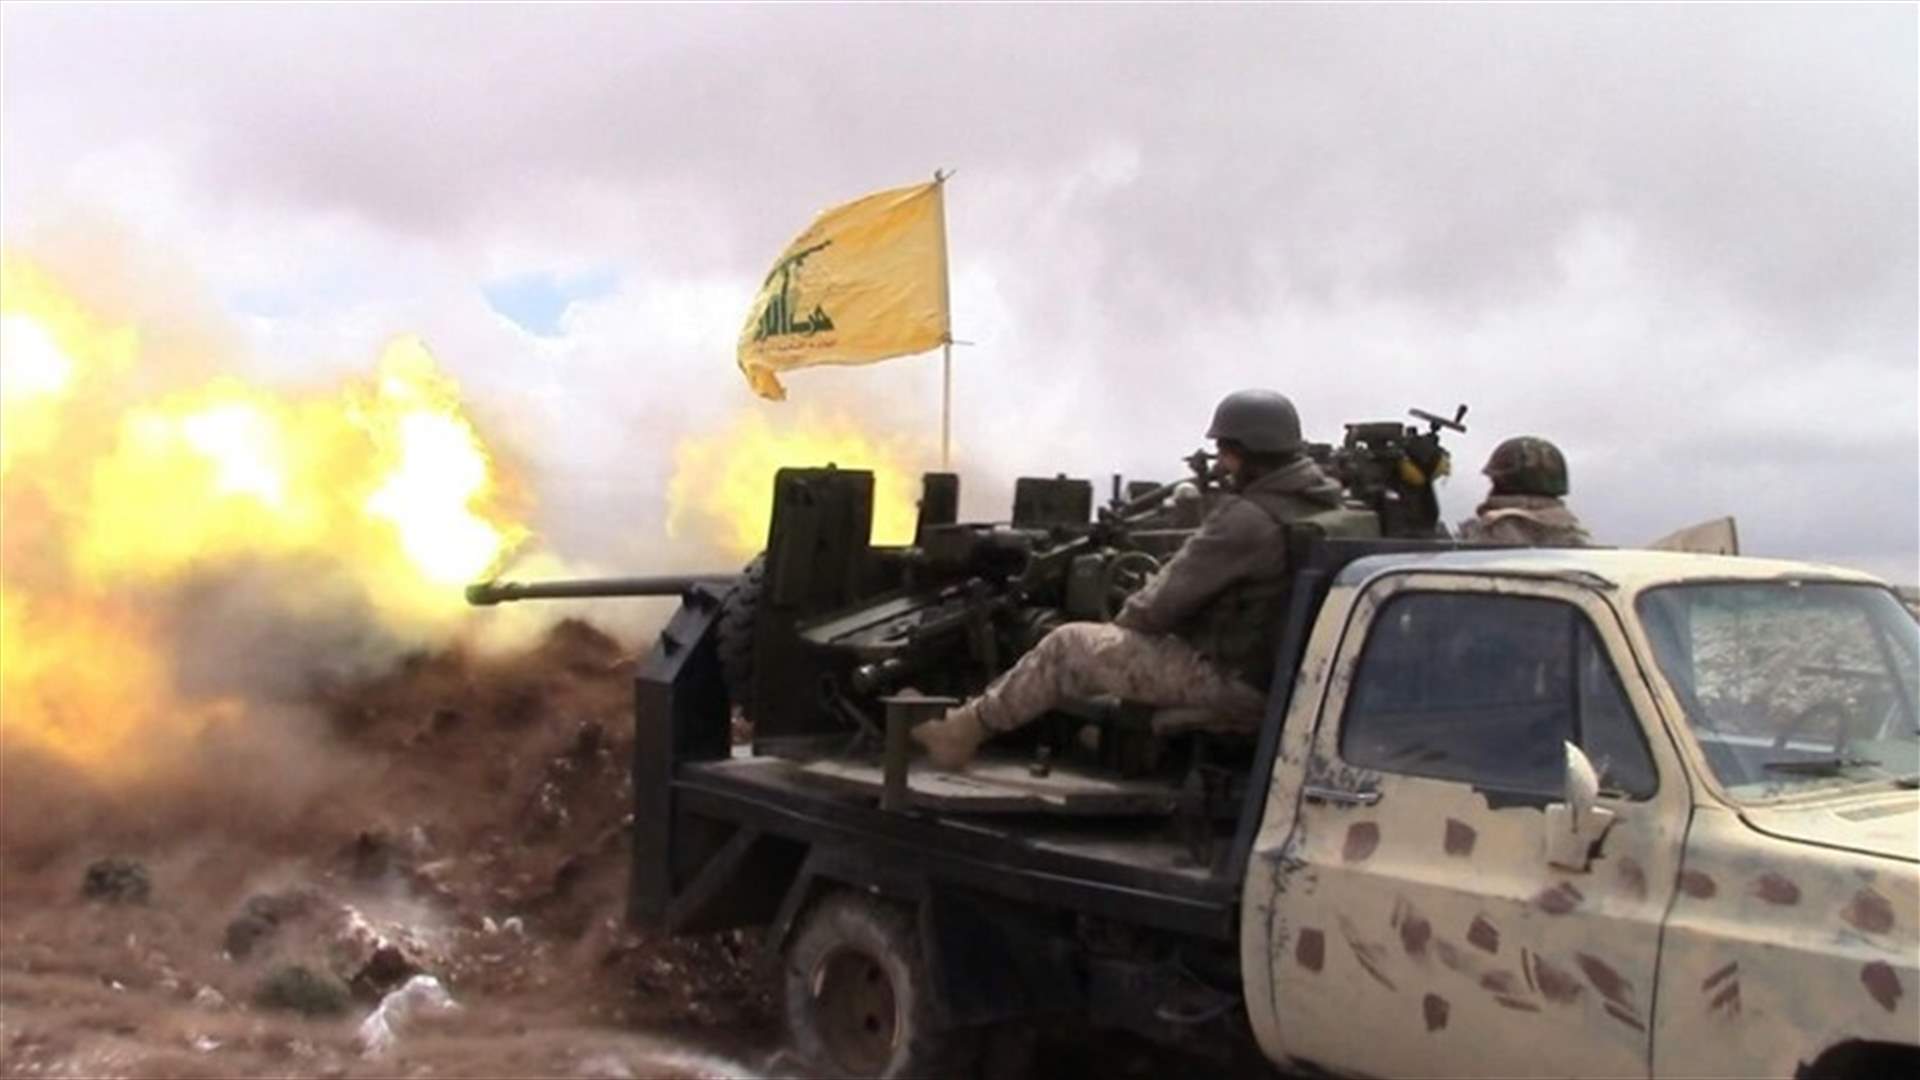  حزب الله يستهدف غرفة لجبهة النصرة في ضهر الهوة بجرود عرسال 